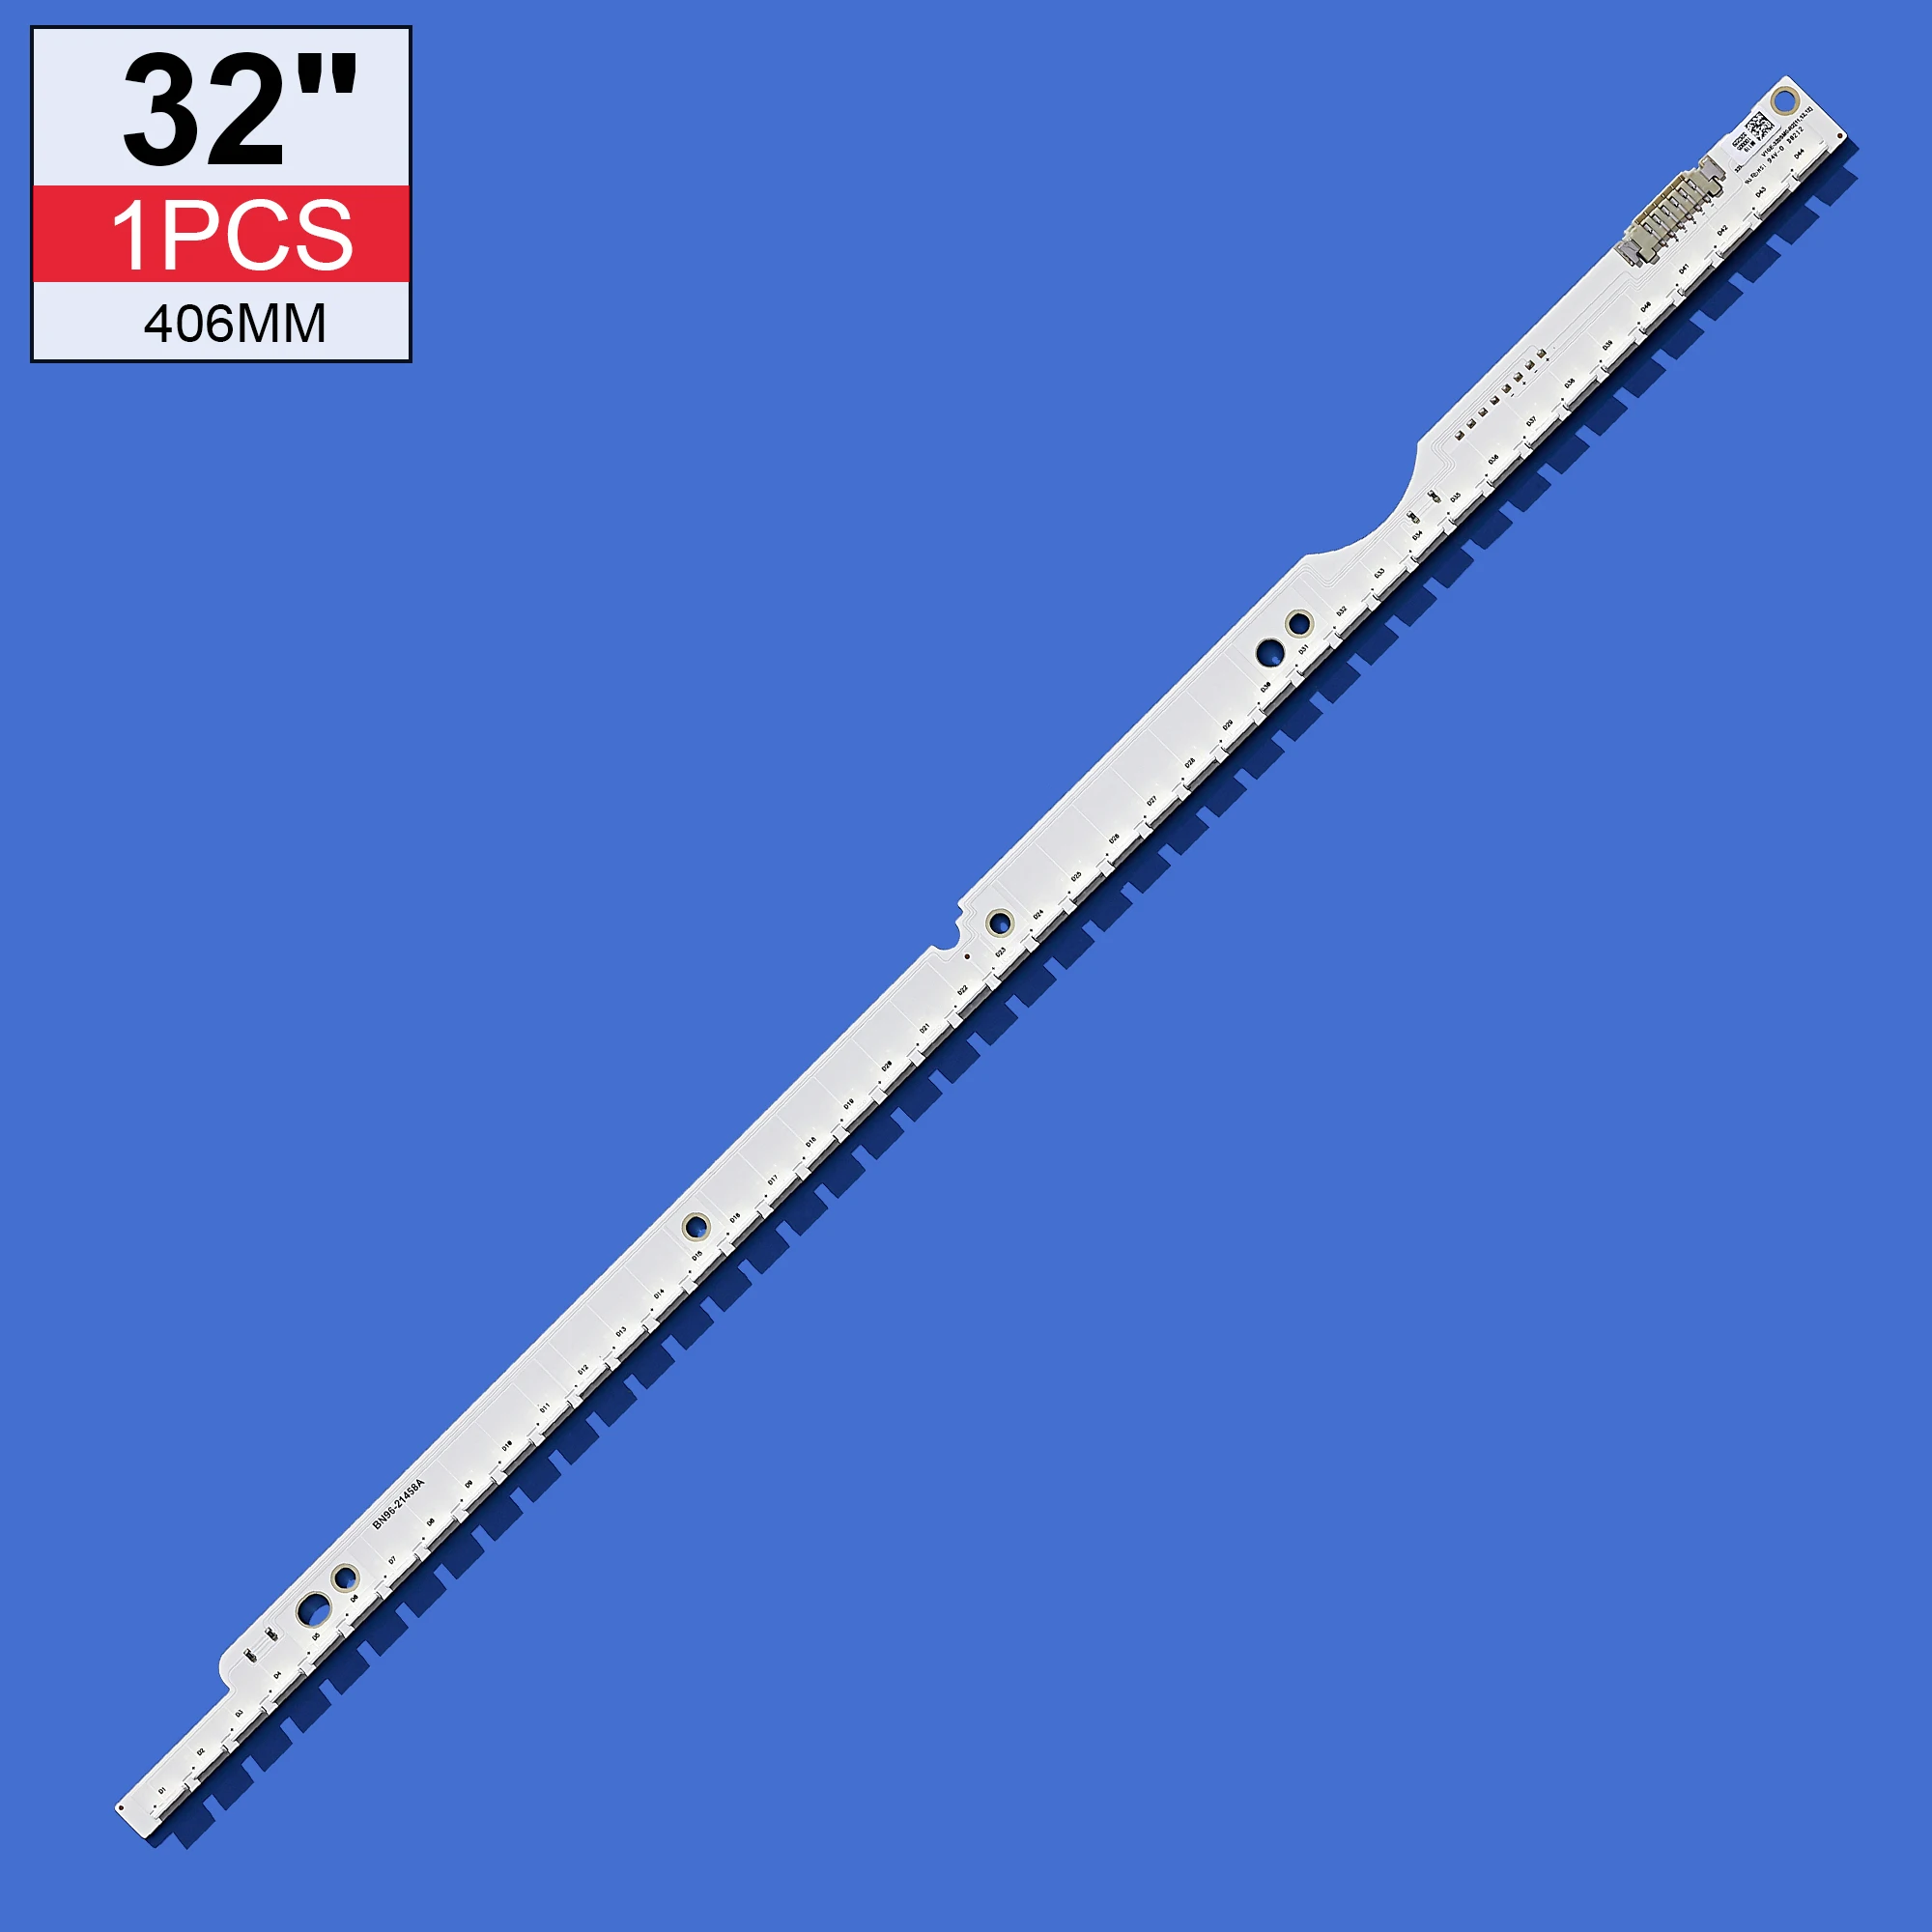 

New 406mm 44LEDs LED Strip For 2012SVS32 7032NNB 44 2D REV1.0 32" TV V1GE-320SM0-R1 UE3a2ES6307 UA32ES5500 UE32ES5530W UE32E